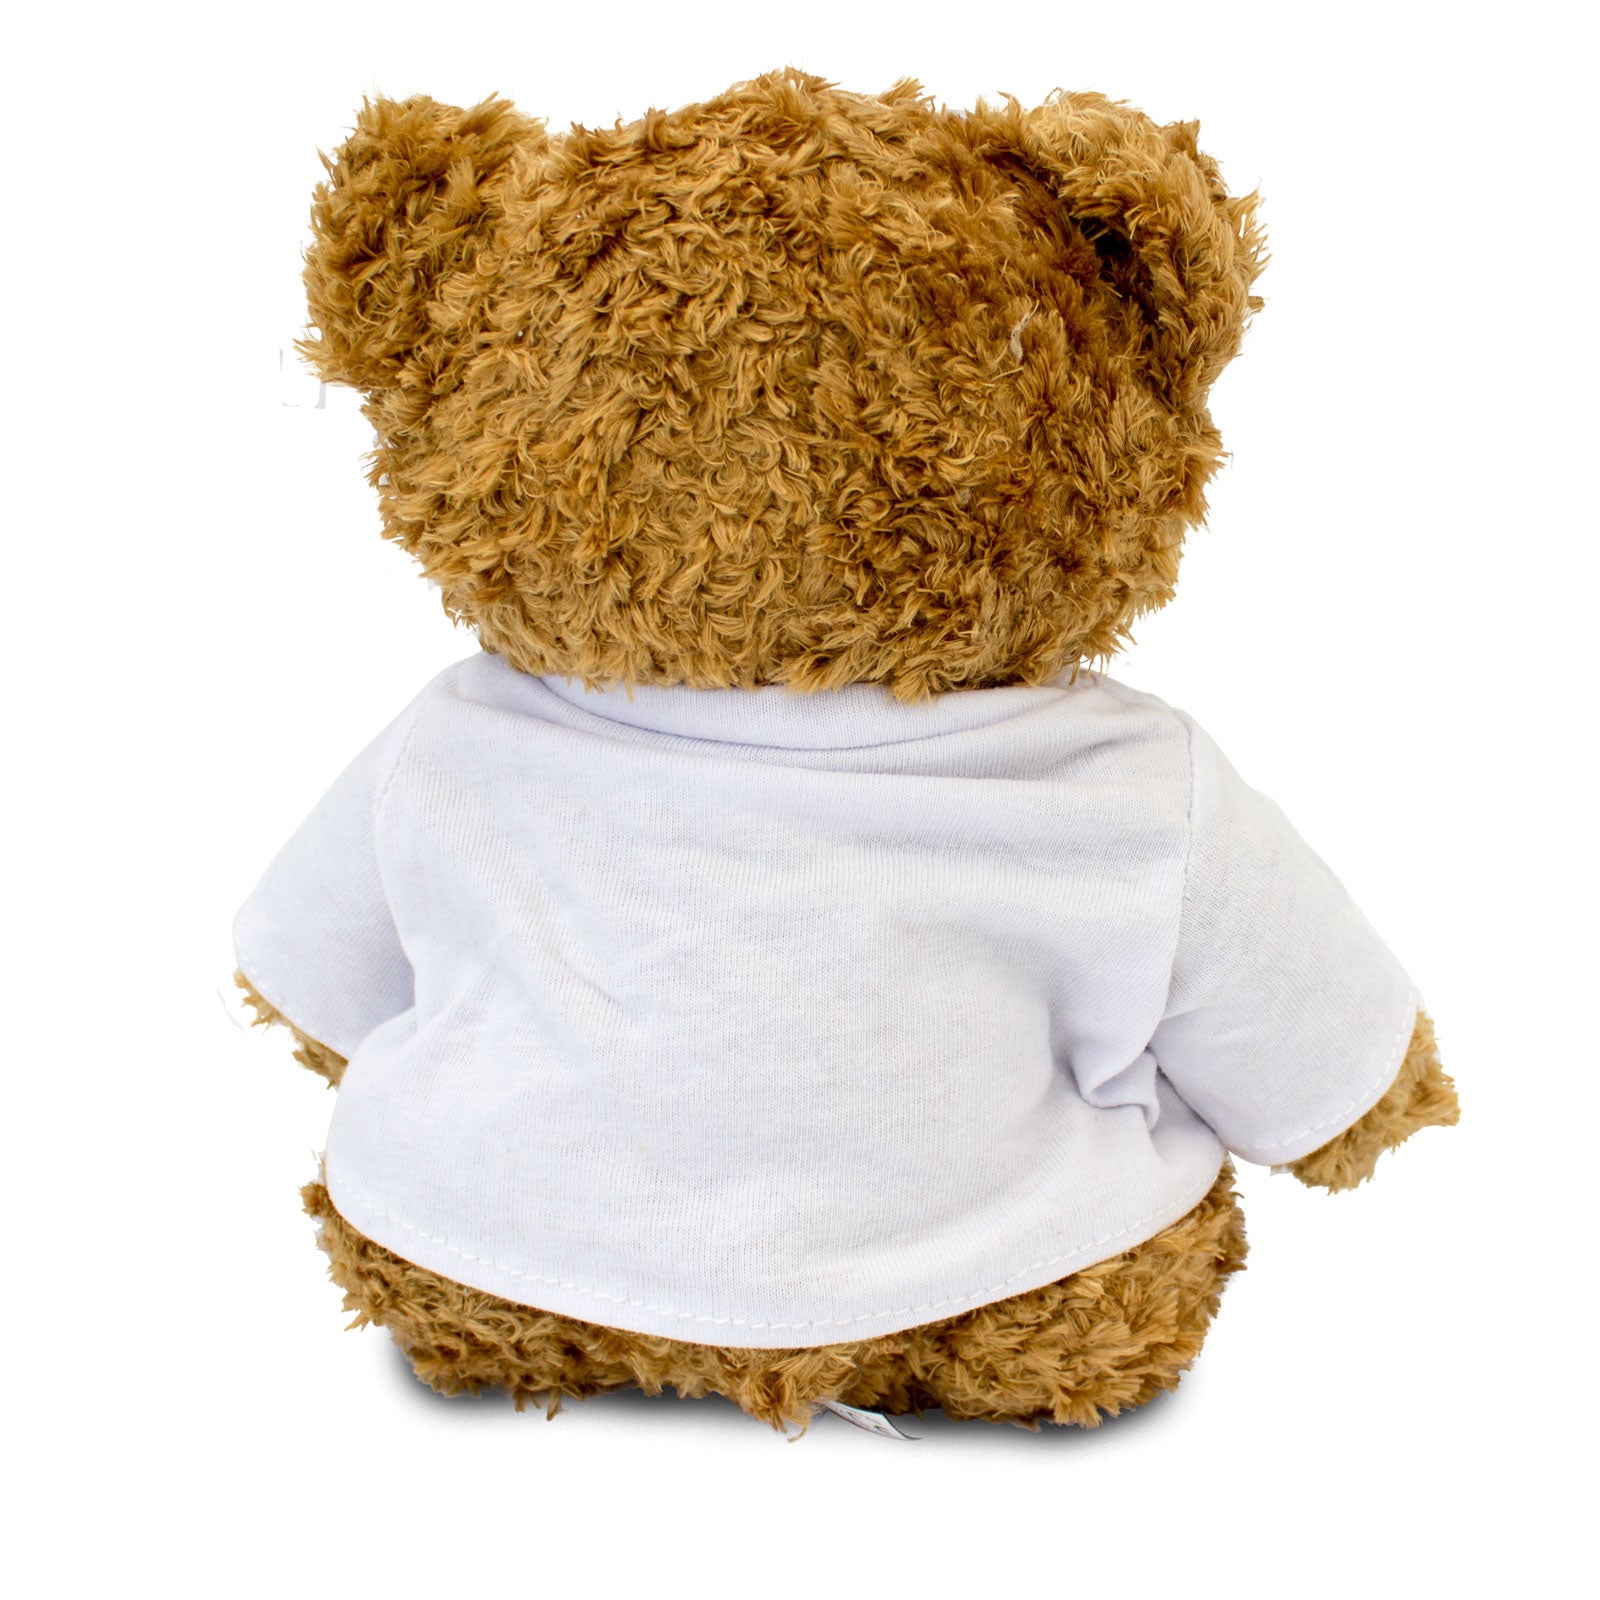 Get Well Soon Ewan - Teddy Bear